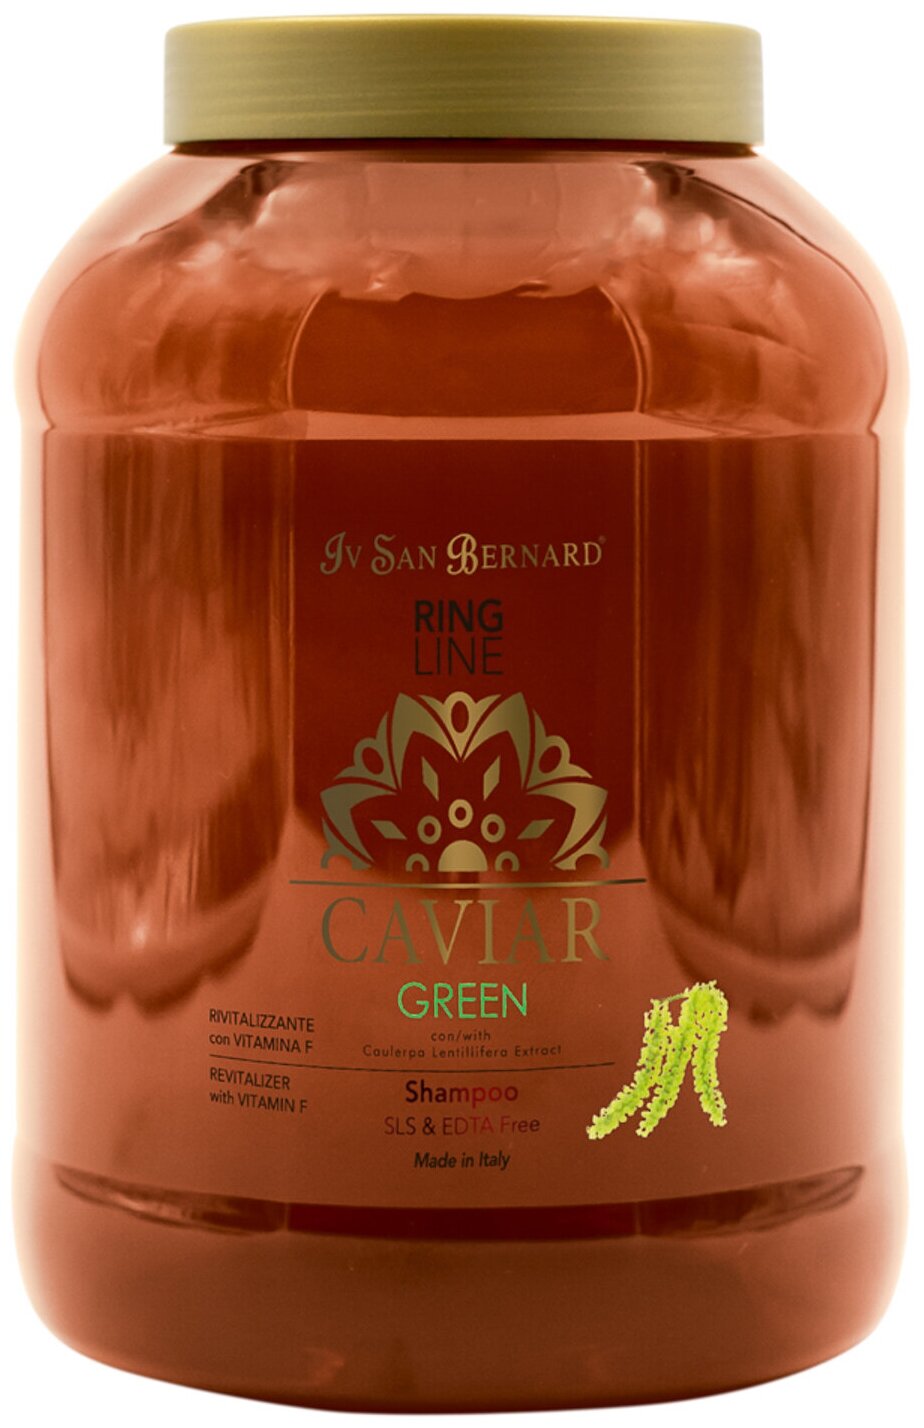 Iv San Bernard, линия CAVIAR GREEN, шампунь ревитализирующий без лаурилсульфата натрия Икорный , 3 л